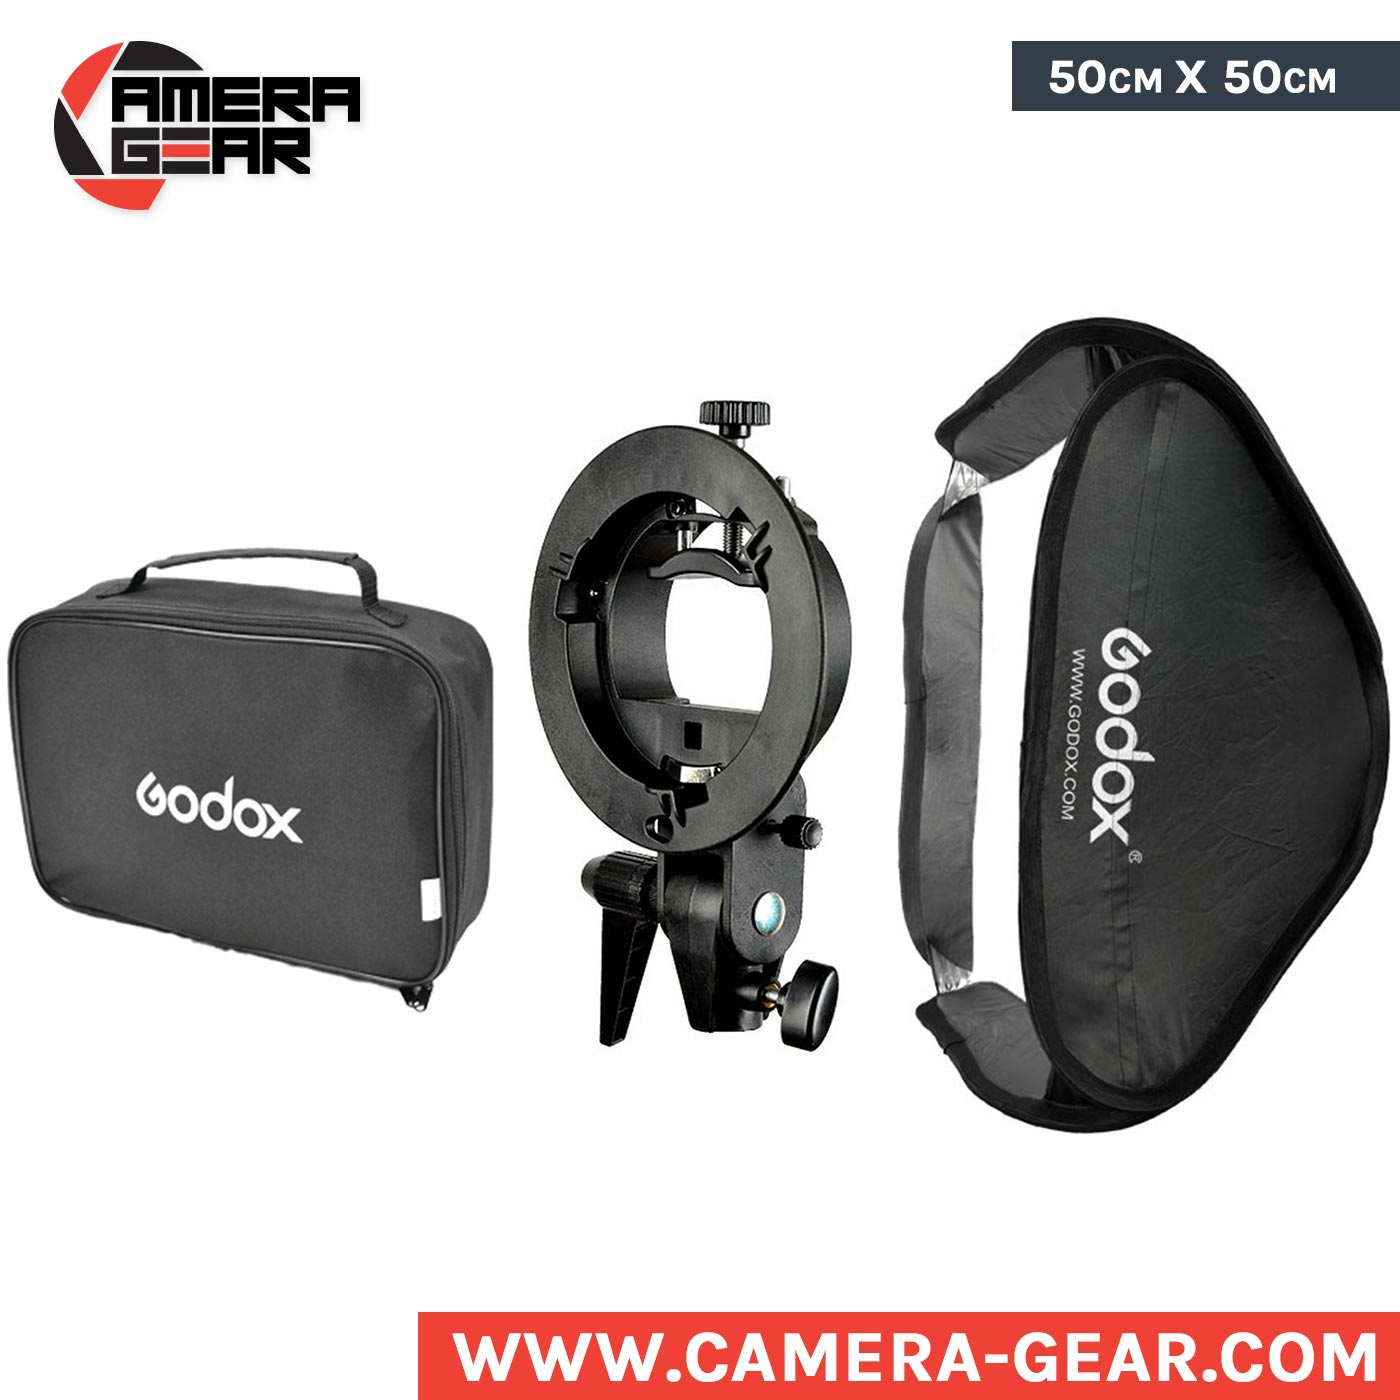 Godox Softbox 50x50 with S type bracket - Light Modifiers - Camera Gear